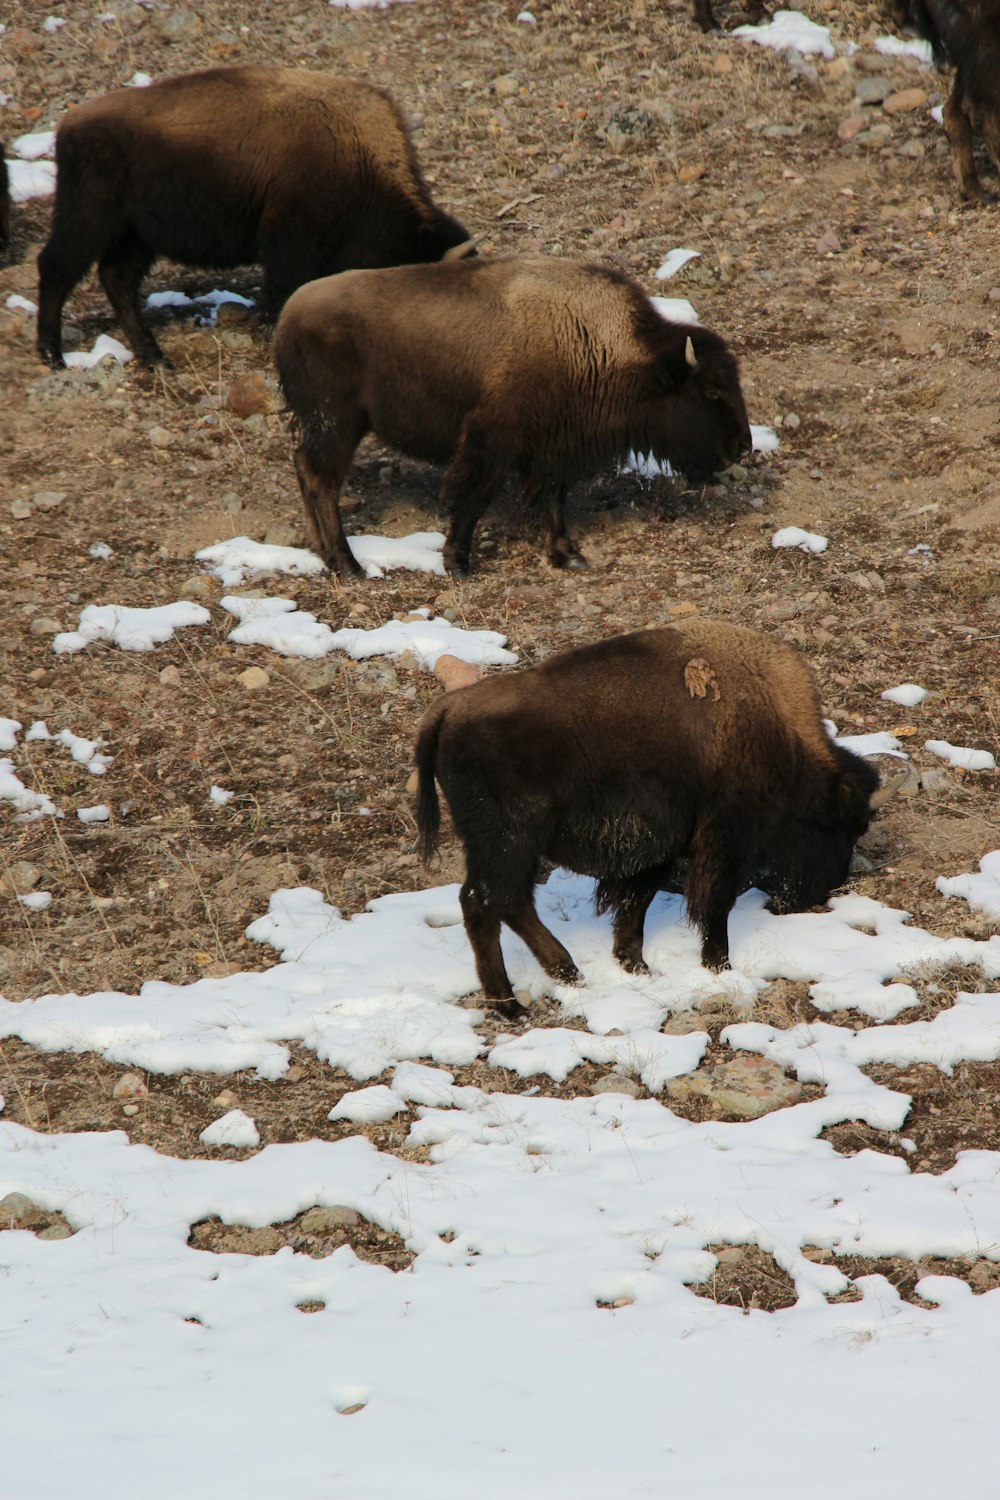 a group of buffalo in a snowy field